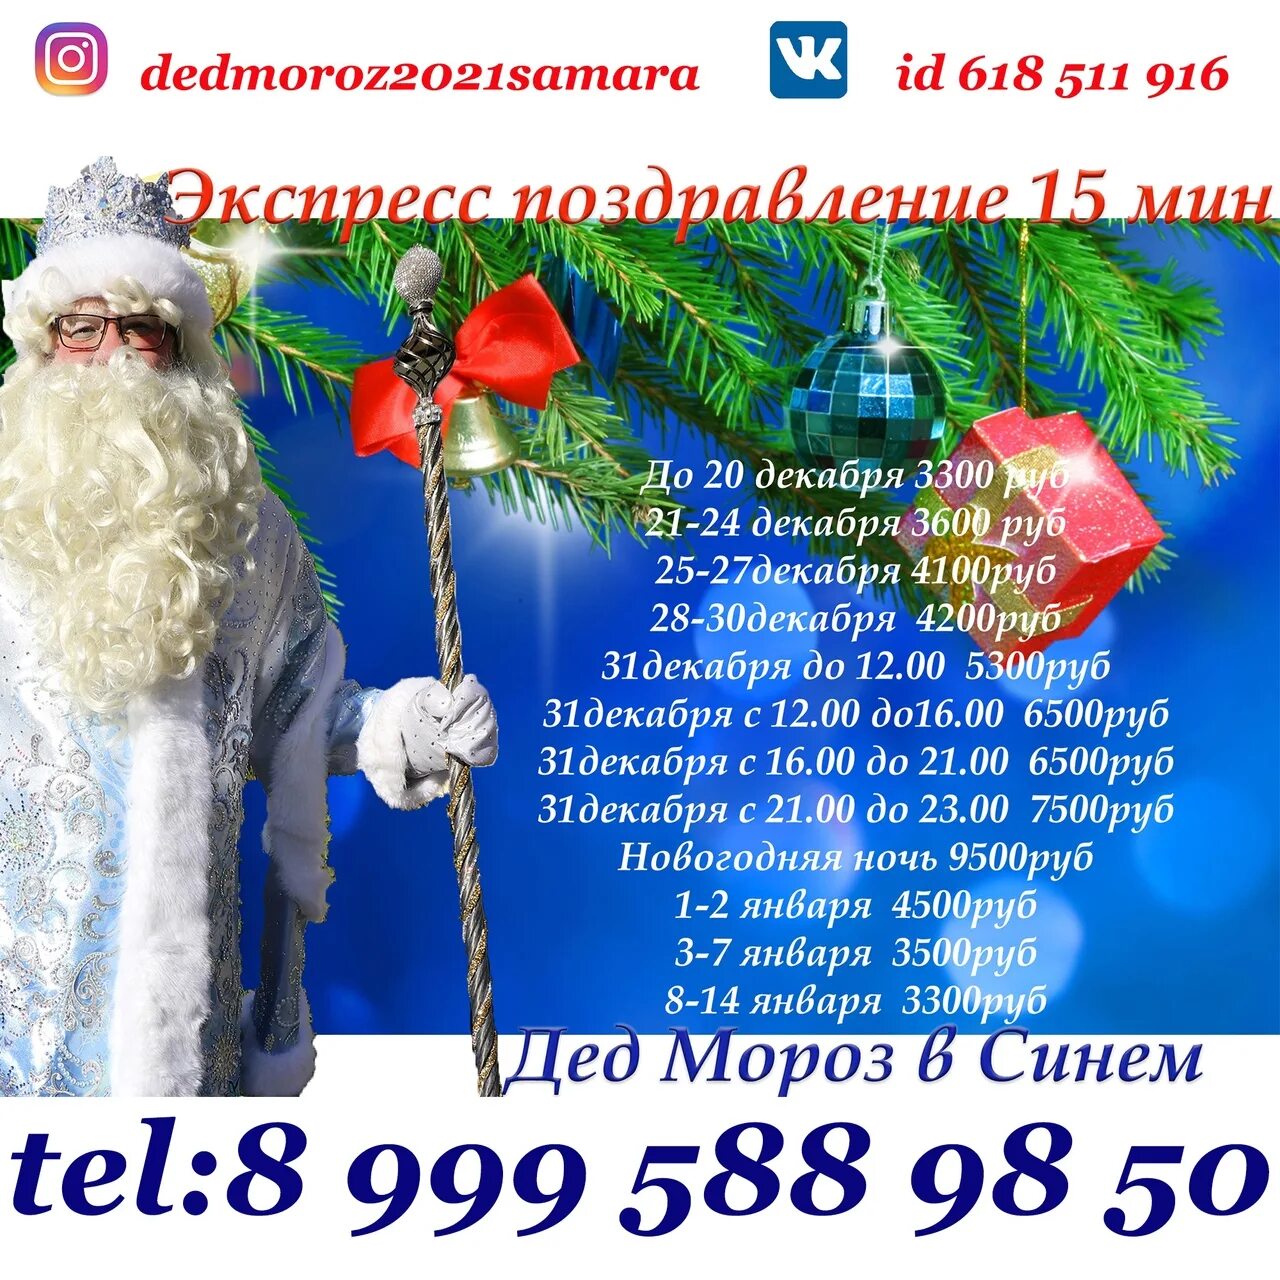 Бесплатный номер деда. Номер Деда Мороза. Номер дедушки Мороза. Номер Деда Мороза 2021. Номер Деда Мороза в России.